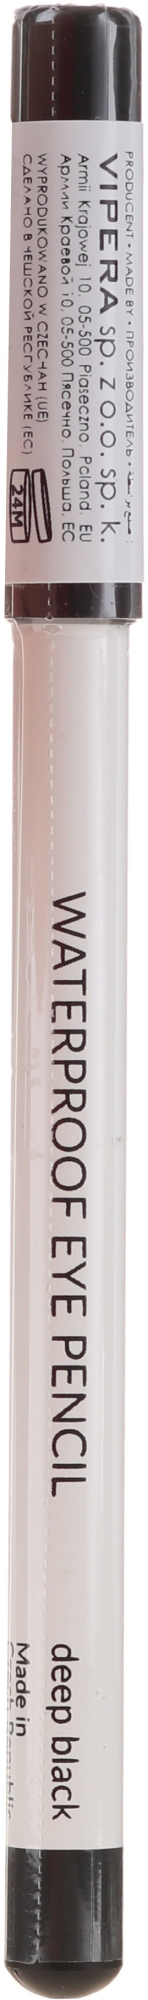 Wasserfester Kajalstift - Vipera Waterproof Eye Pencil — Foto Deep Black